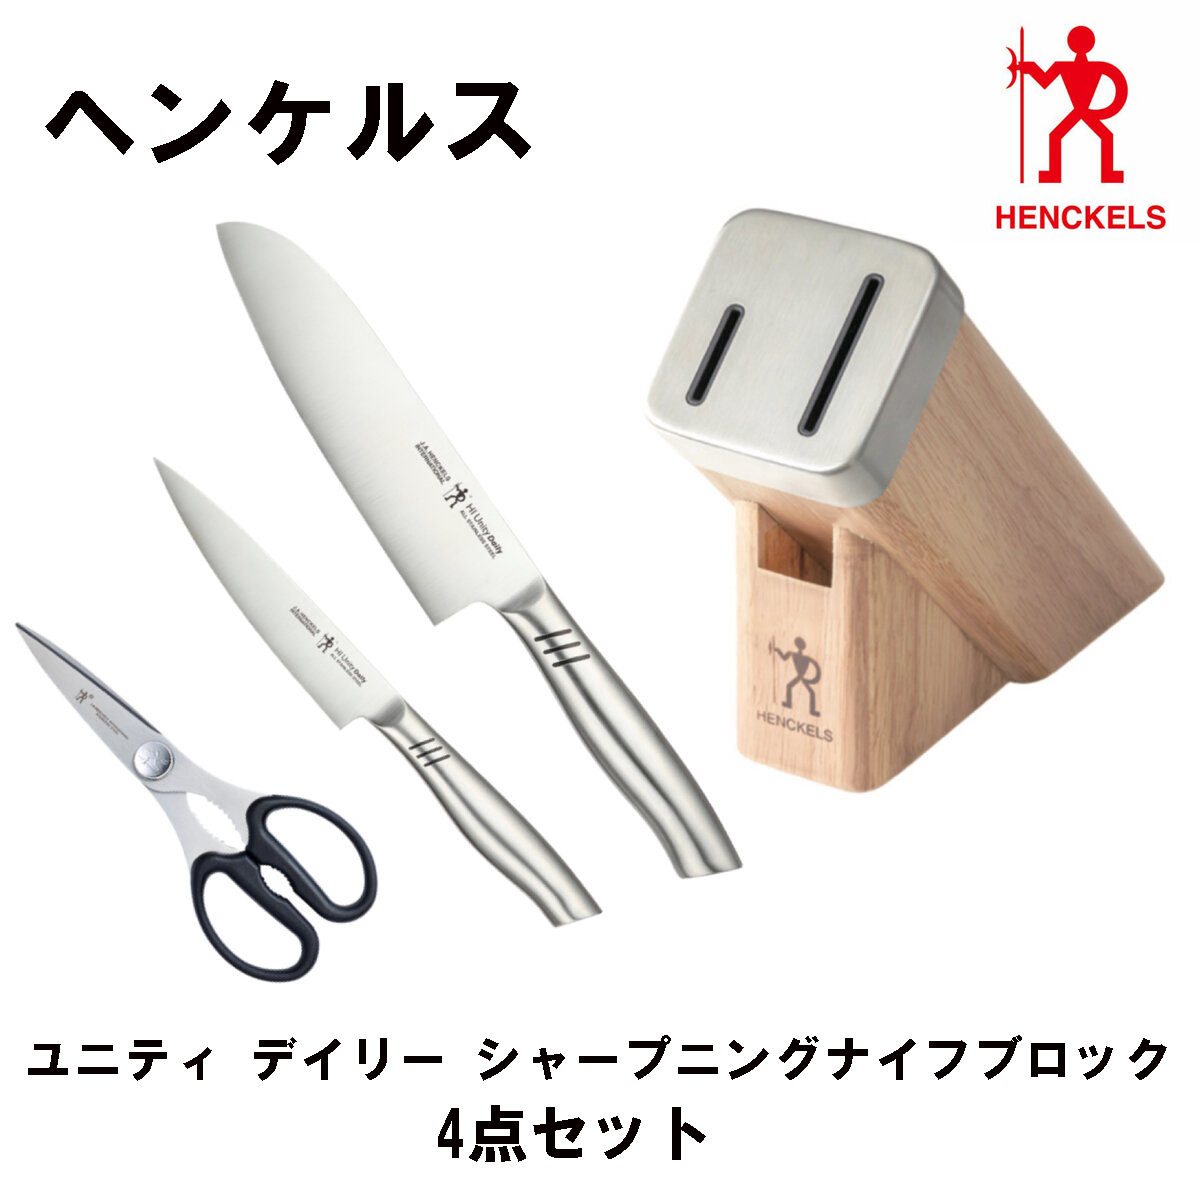 銀座ブランド割引 【送料無料】ツヴィリング 白5セット ブロック ナイフ 調理器具